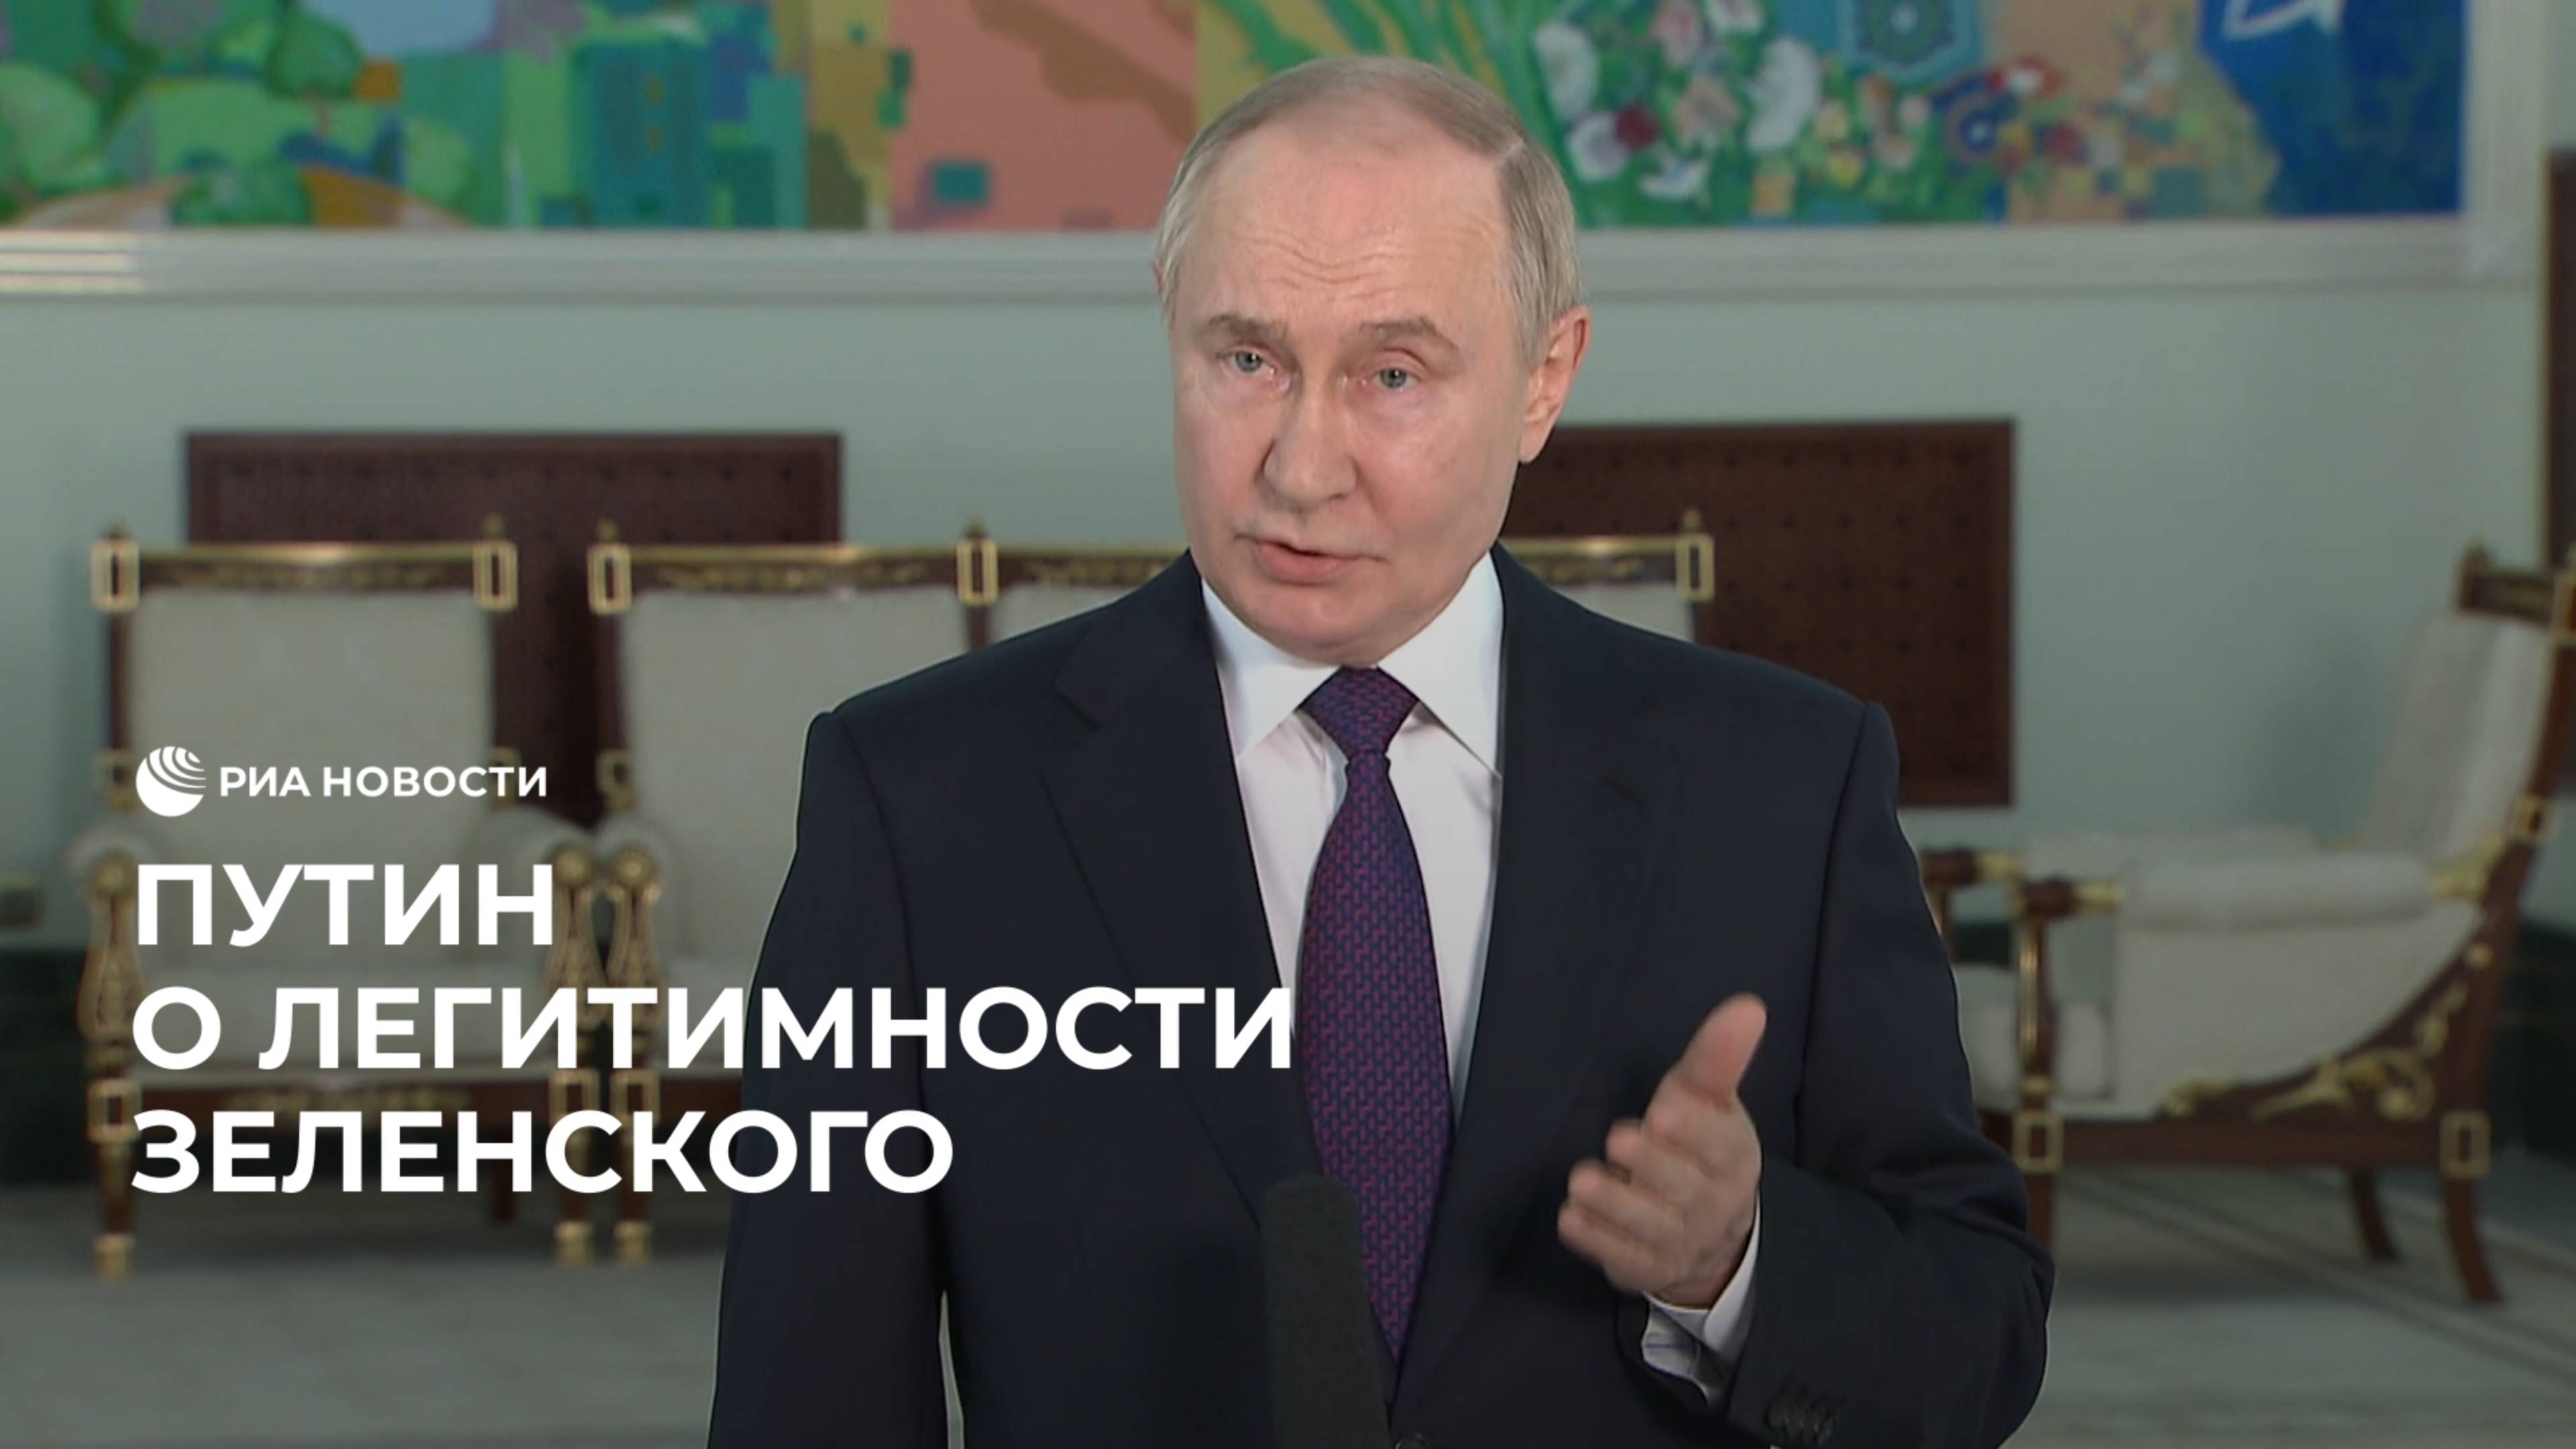 Путин о легитимности Зеленского